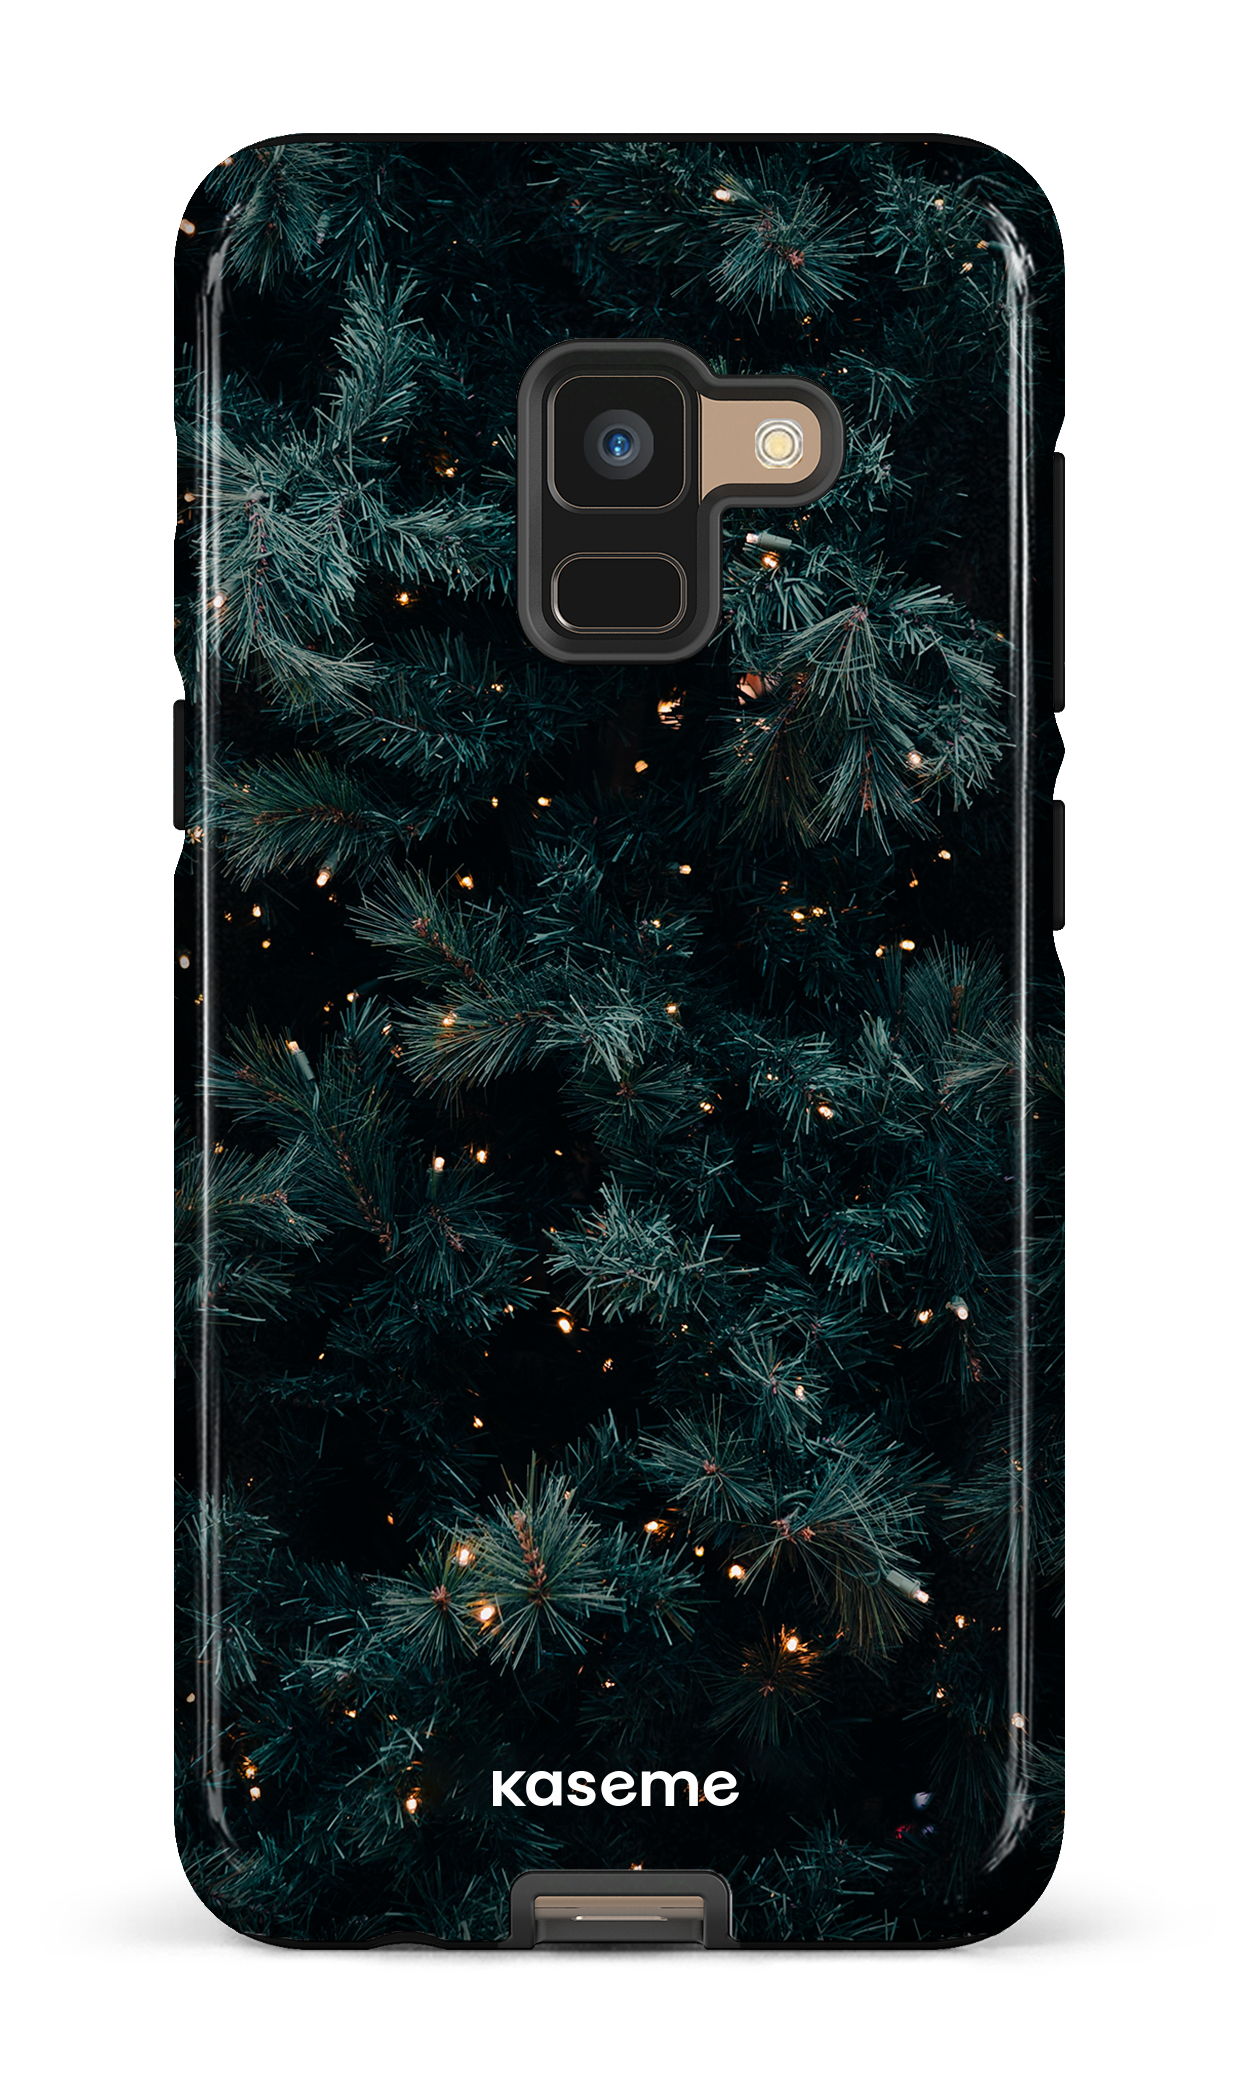 Holidays - Galaxy A8